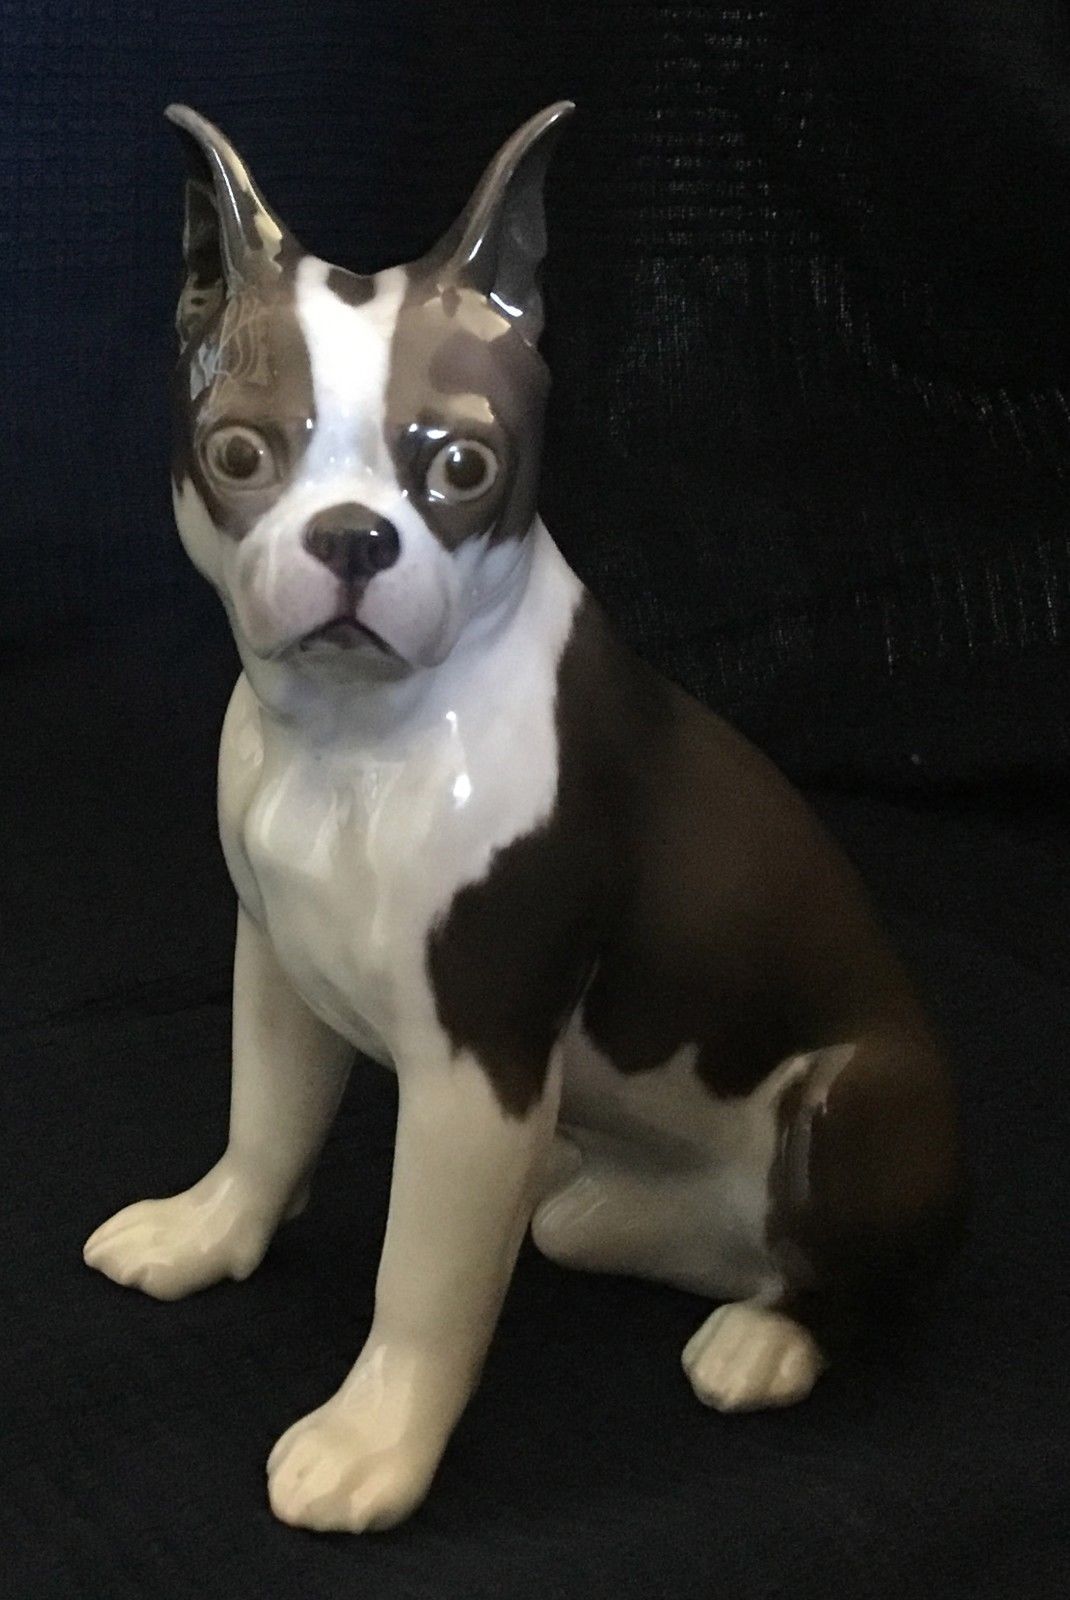 Bing & Grondahl : les figurines de chiens les plus chères sur eBay ! 